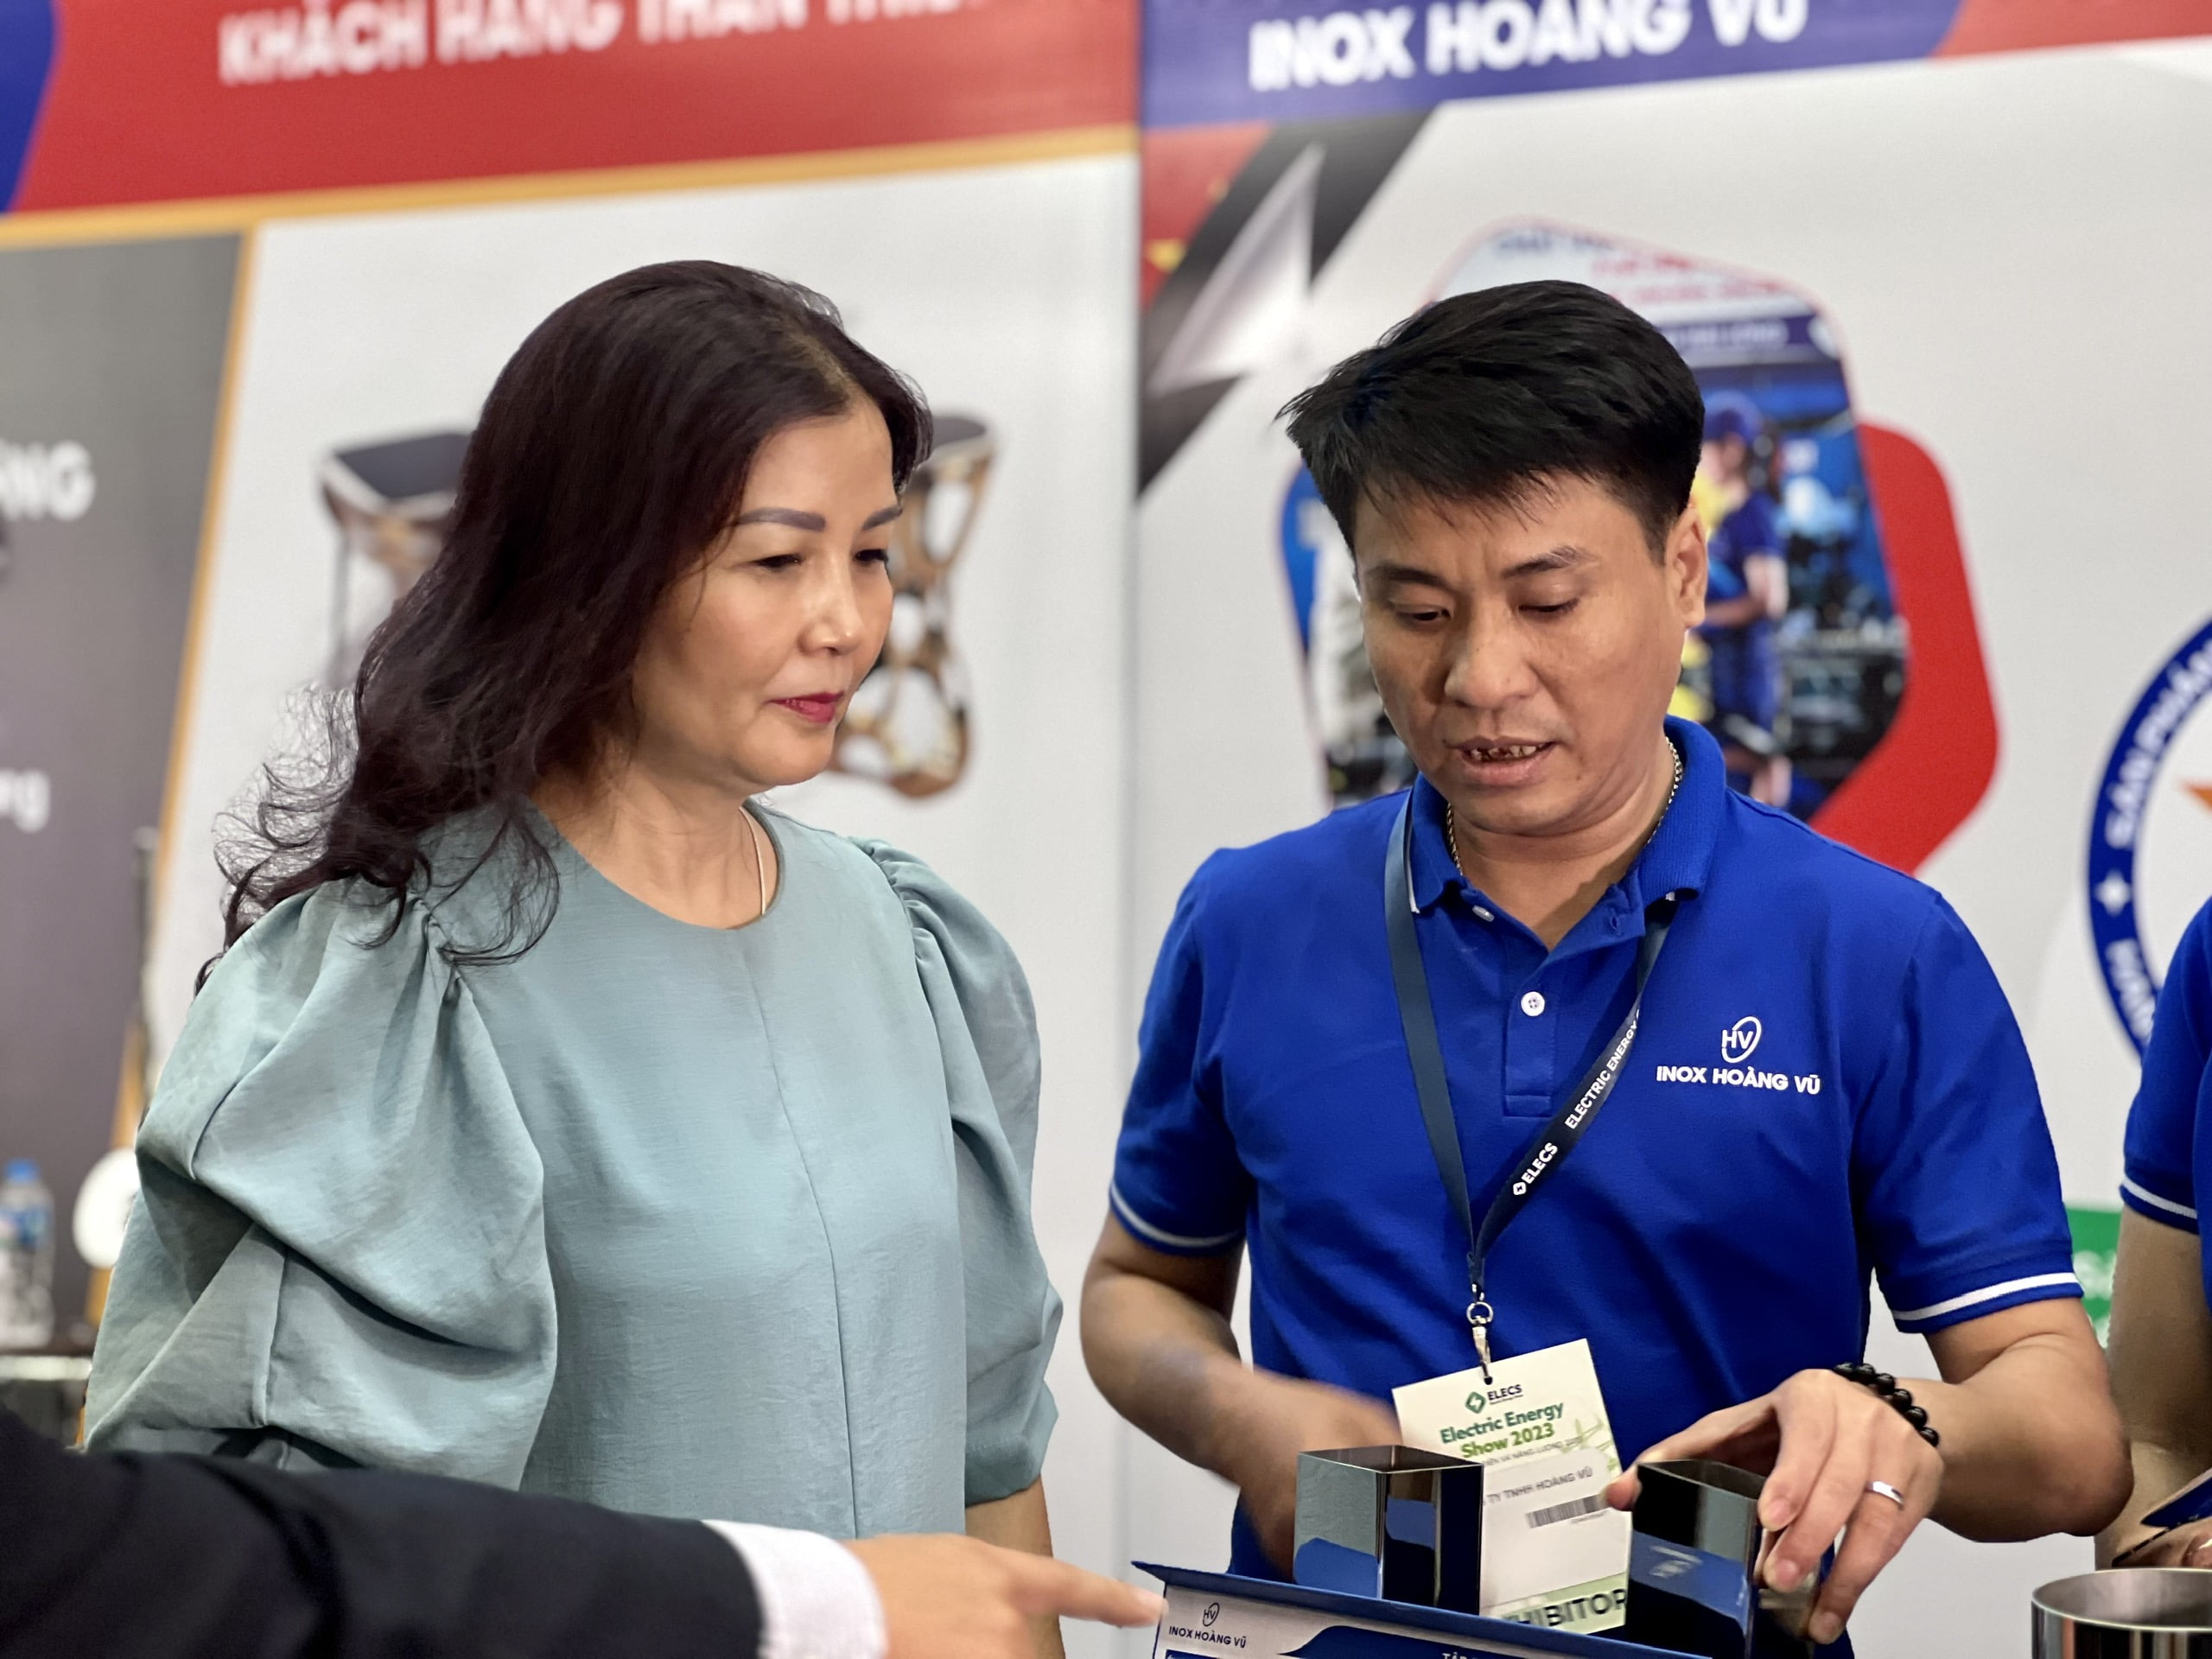 SPCNCL Hà Nội: Doanh nghiệp chủ lực tham gia Hội chợ sản phẩm công nghiệp, máy móc thiết bị và tự động hóa Hà Nội năm 2023